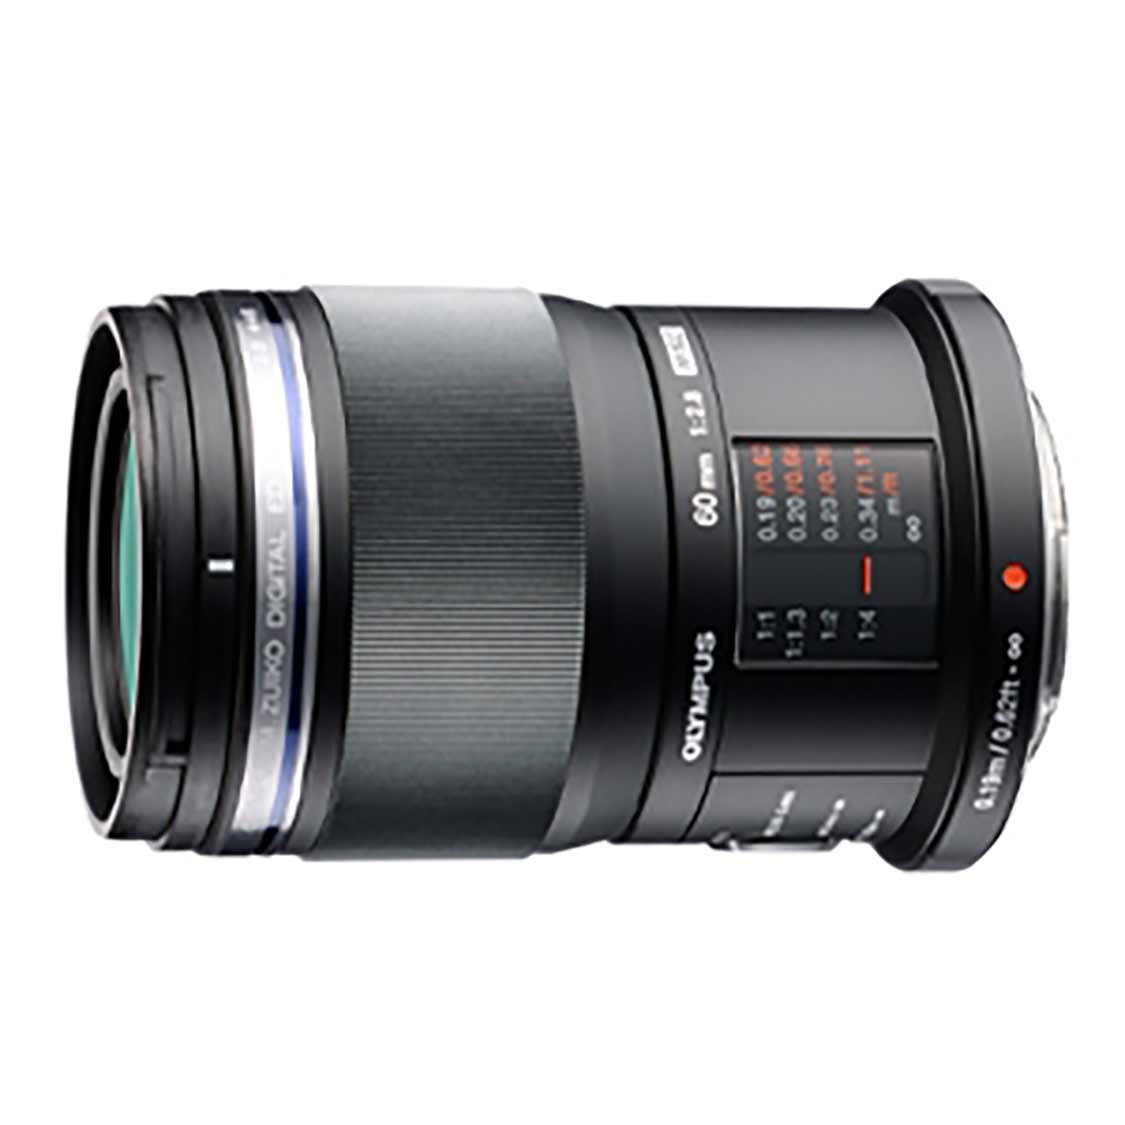 Olympus PEN MSC 60mm F2.8 Macro Lens